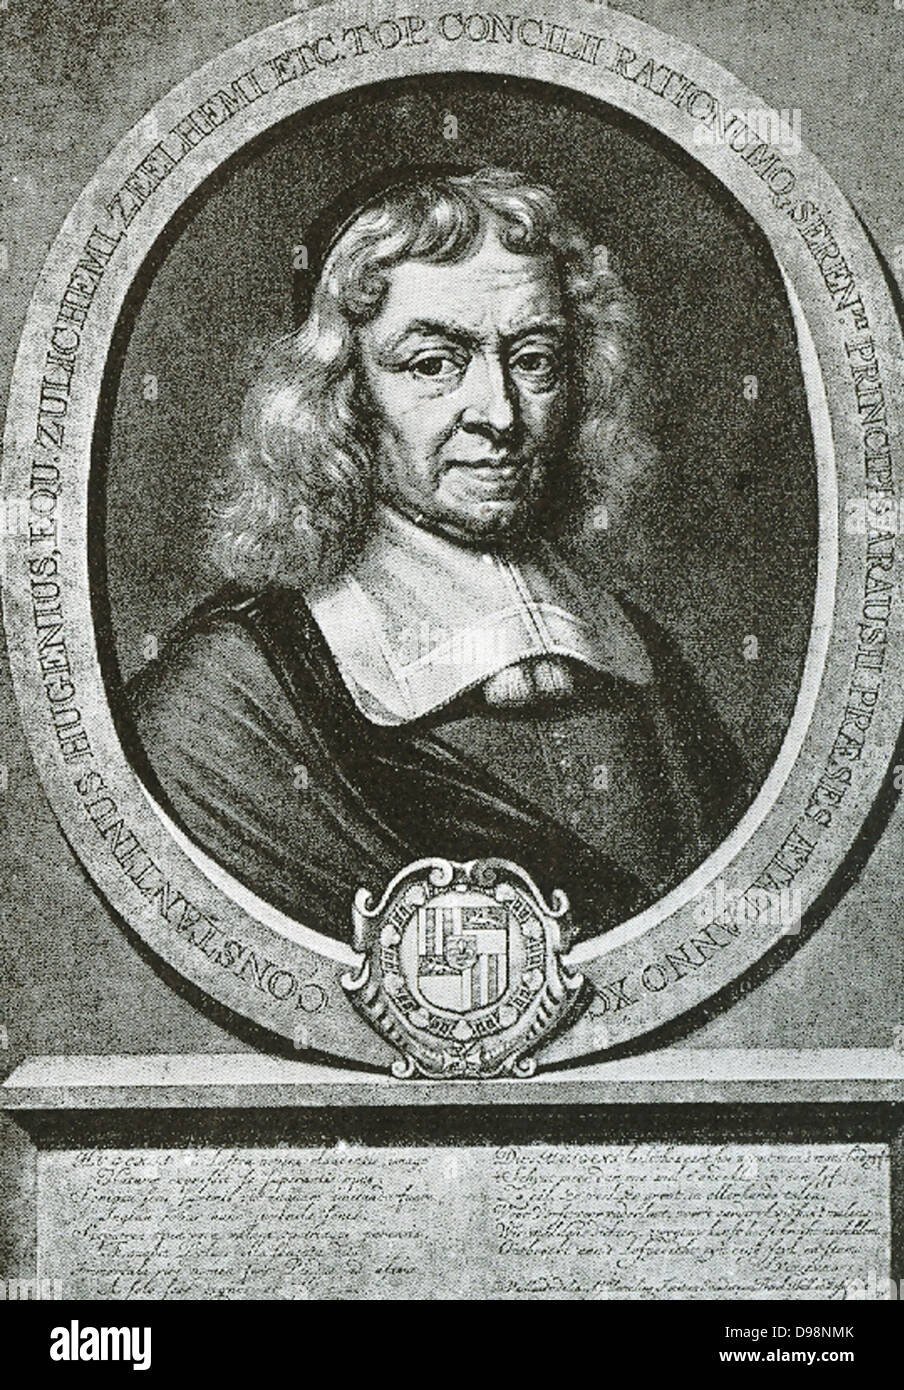 Constantijn Huygens (1596-1687) war ein niederländischer Goldene Zeitalter Dichter und Komponist. Er war Sekretär zu zwei Fürsten von Orange: Friedrich Heinrich und Wilhelm II. und der Vater der Wissenschaftler Christiaan Huygens. Stockfoto